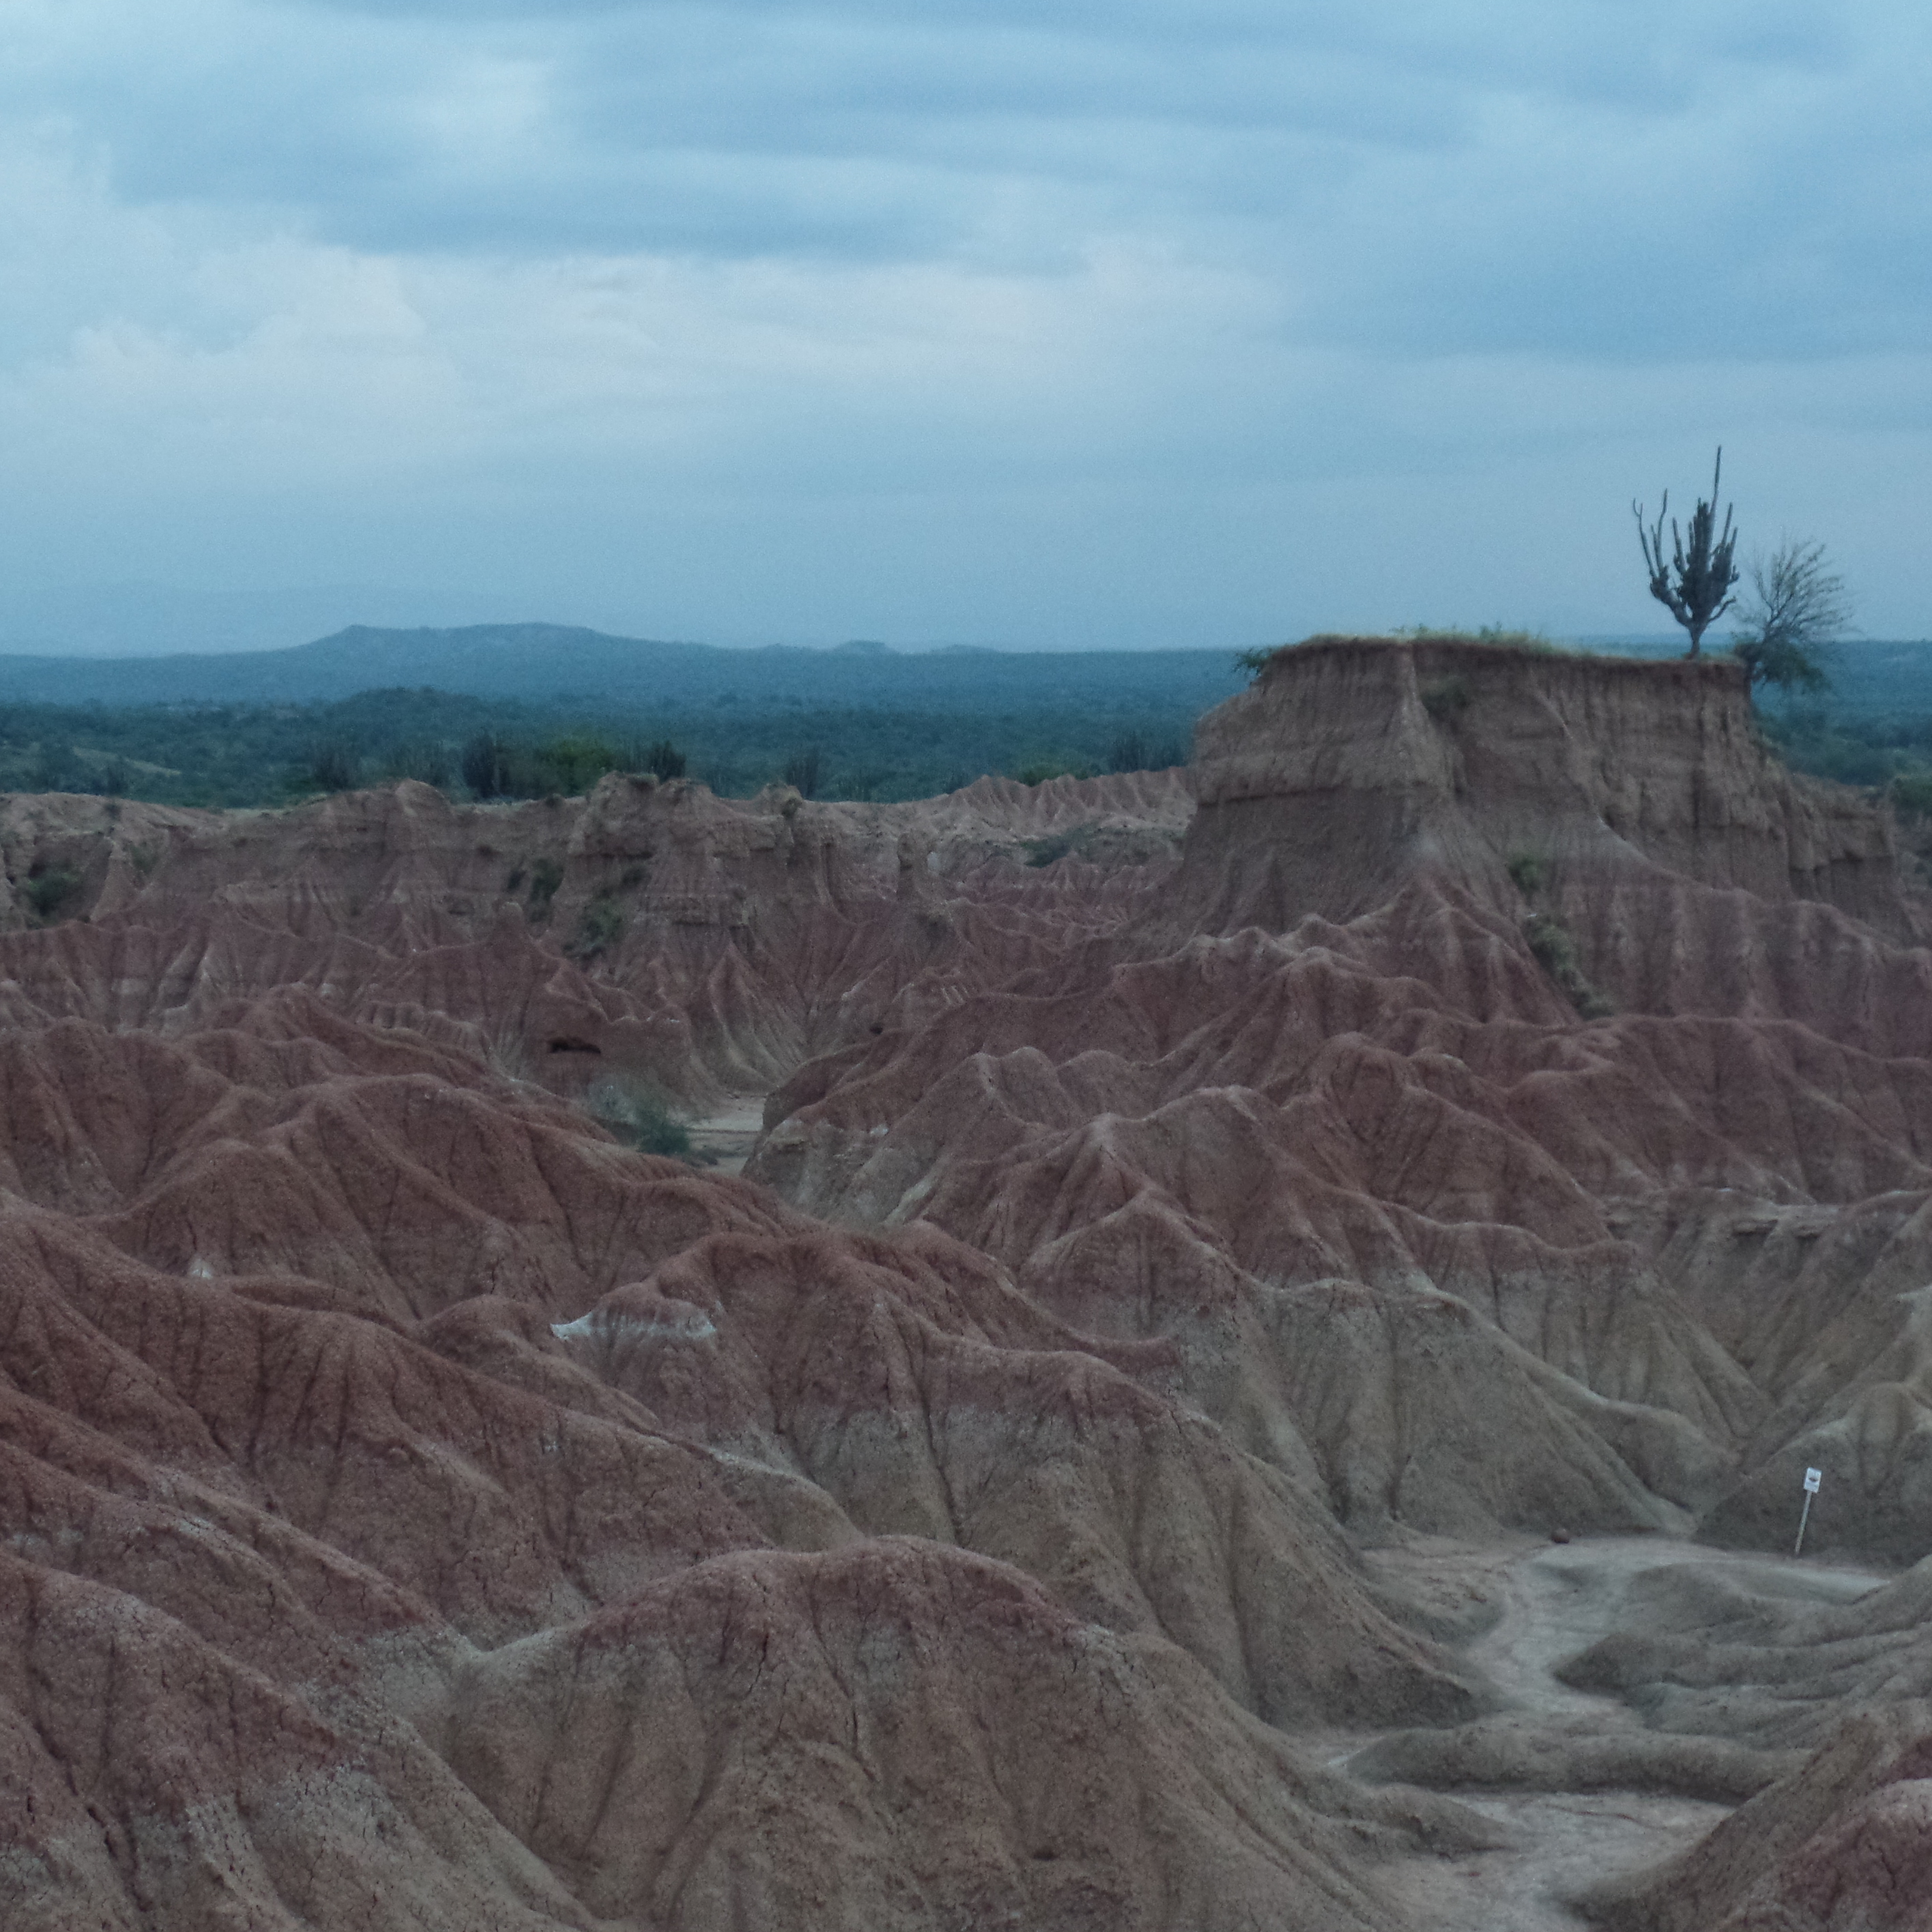 Stunning landscape of Colombia's Tatacoa Desert